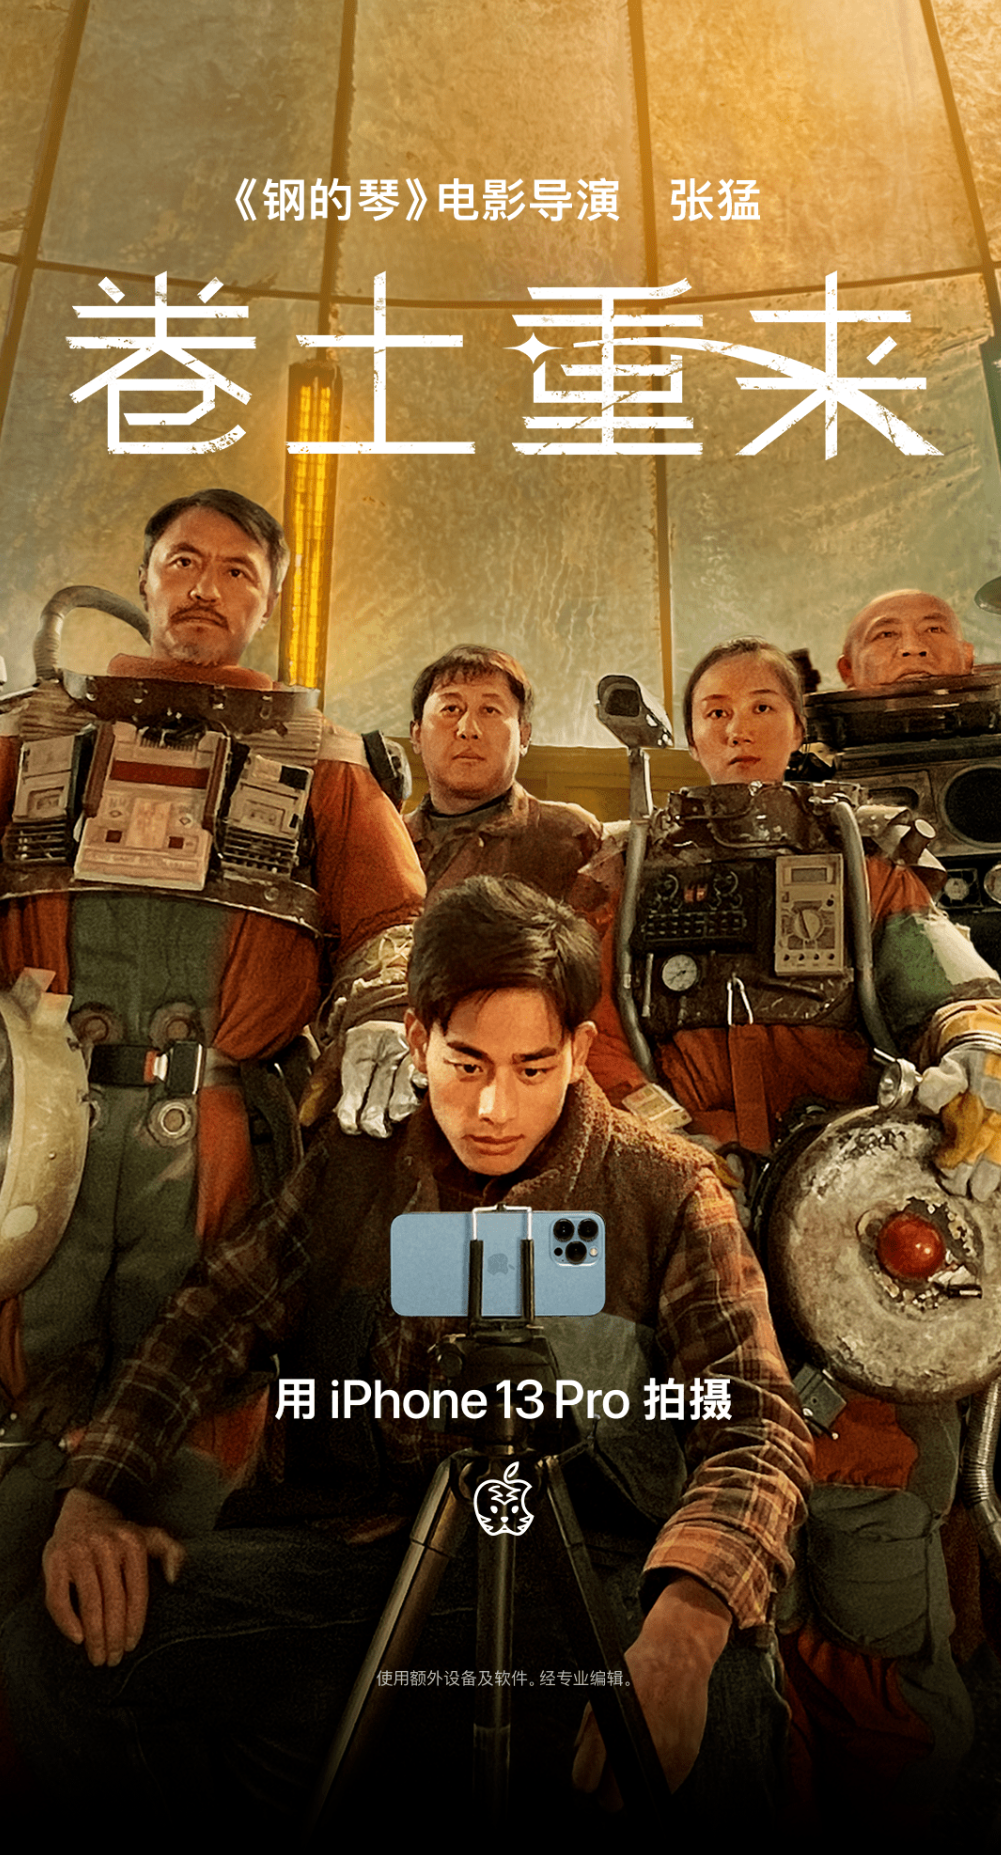 Apple 新年短片大片《卷土重来》在线播放 使用iPhone13 Pro拍摄的电影